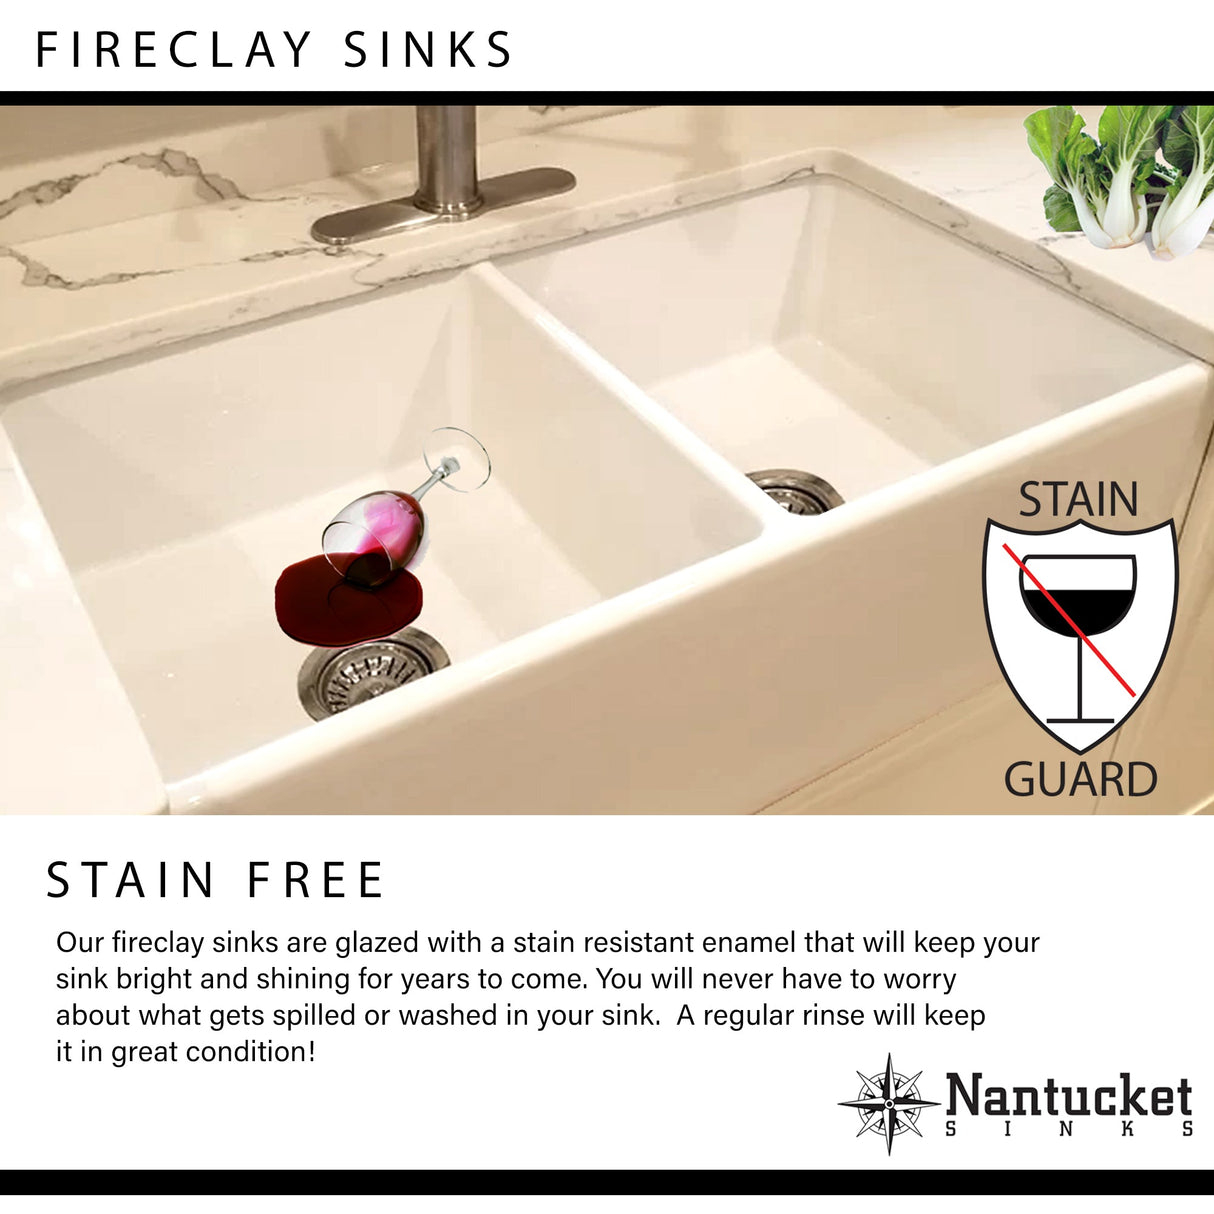 Nantucket Sinks 18-Inch Undermount Fireclay Kitchen Sink Wellfleet-1818W